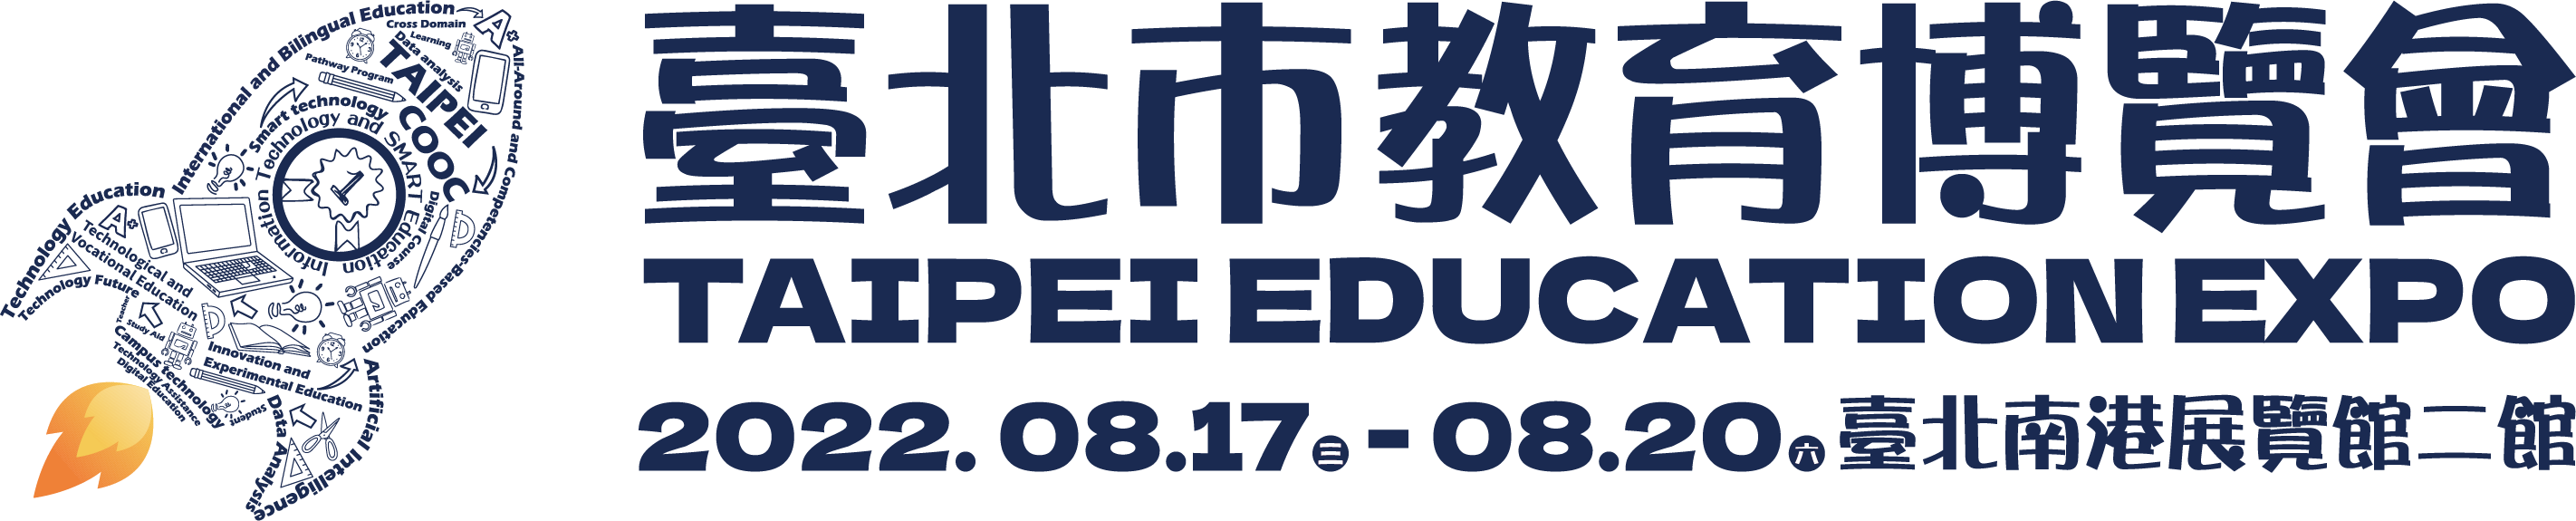 臺北市教育博覽會LOGO